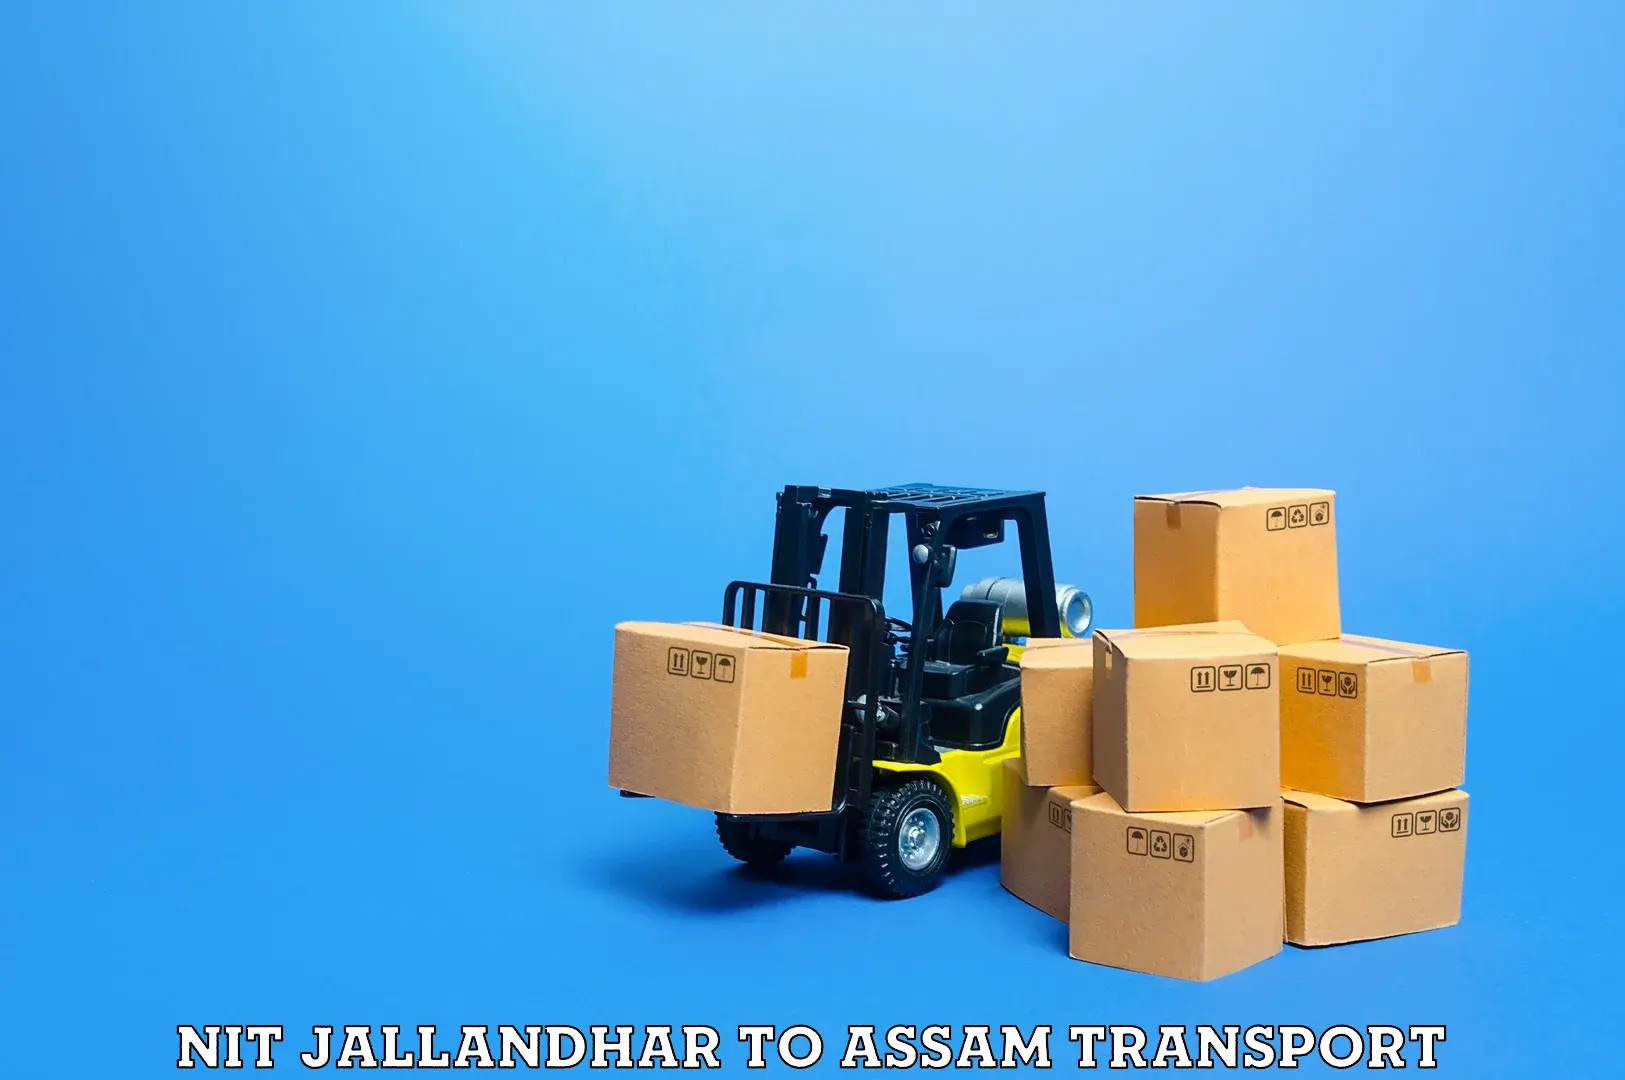 Express transport services NIT Jallandhar to Duliajan